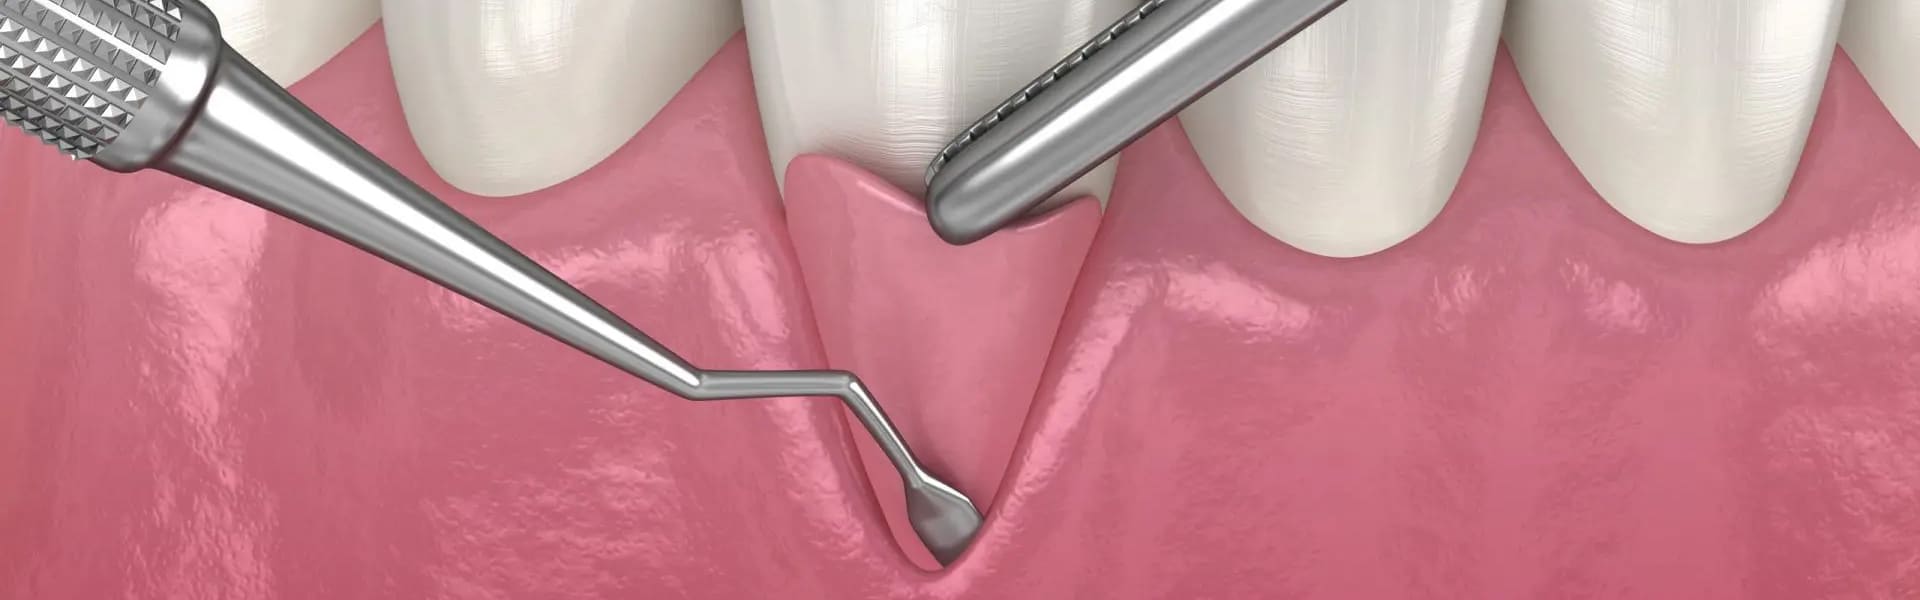 پیوند لثه در دندانپزشکی